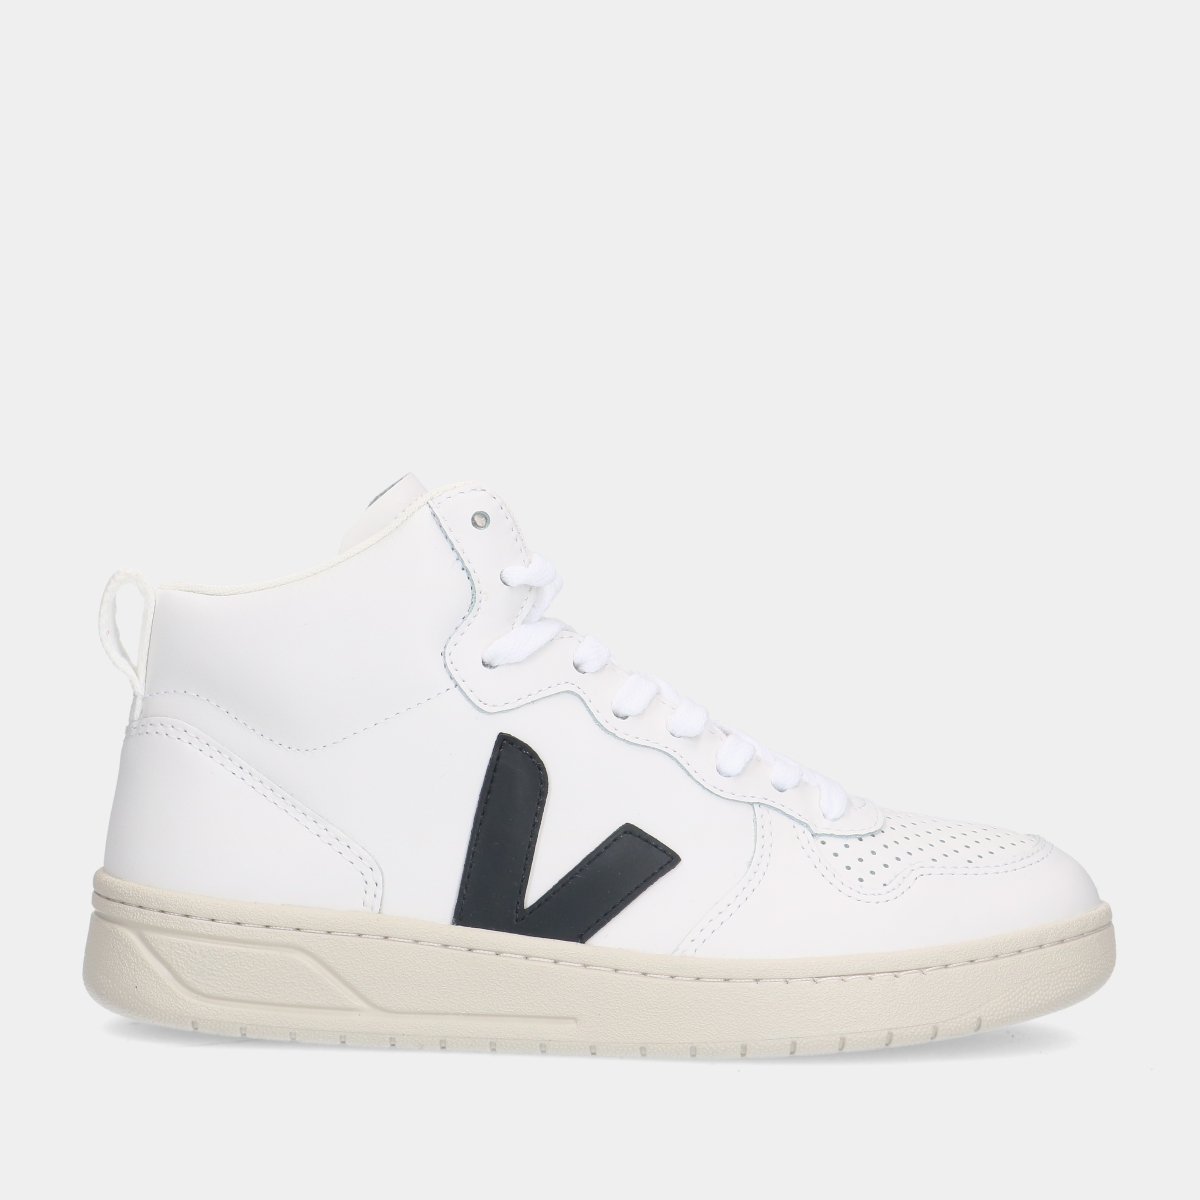 VEJA V-15 Leather White Black sneakers